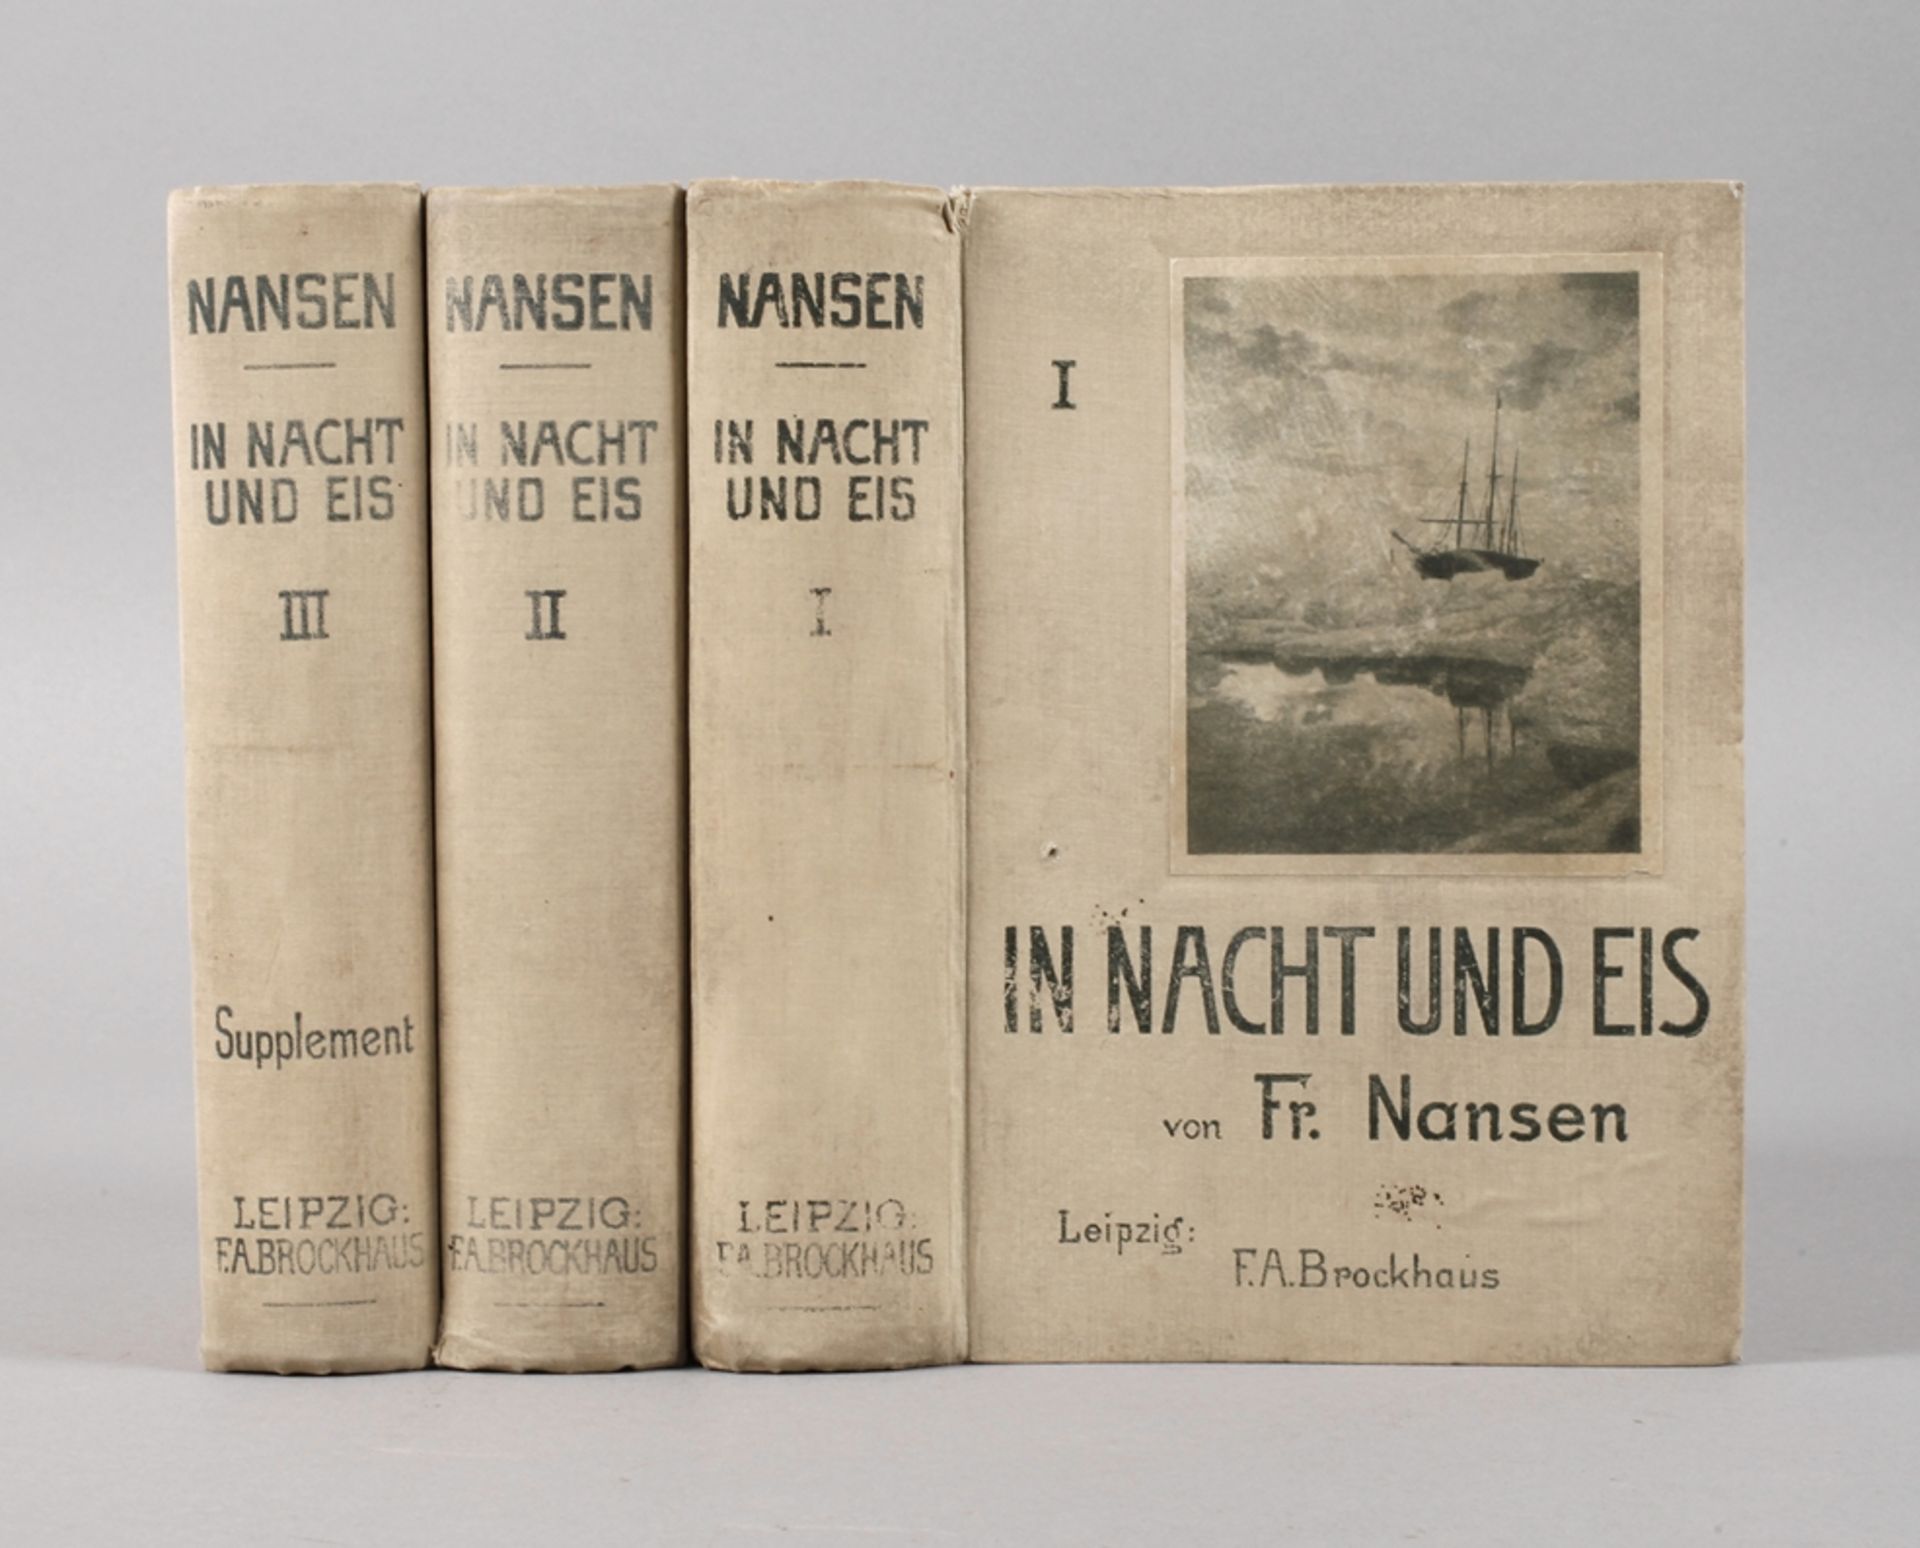 In Nacht und EisDie norwegische Polarexpedition 1893-1896 von Fridtjof Nansen, neue revidirte